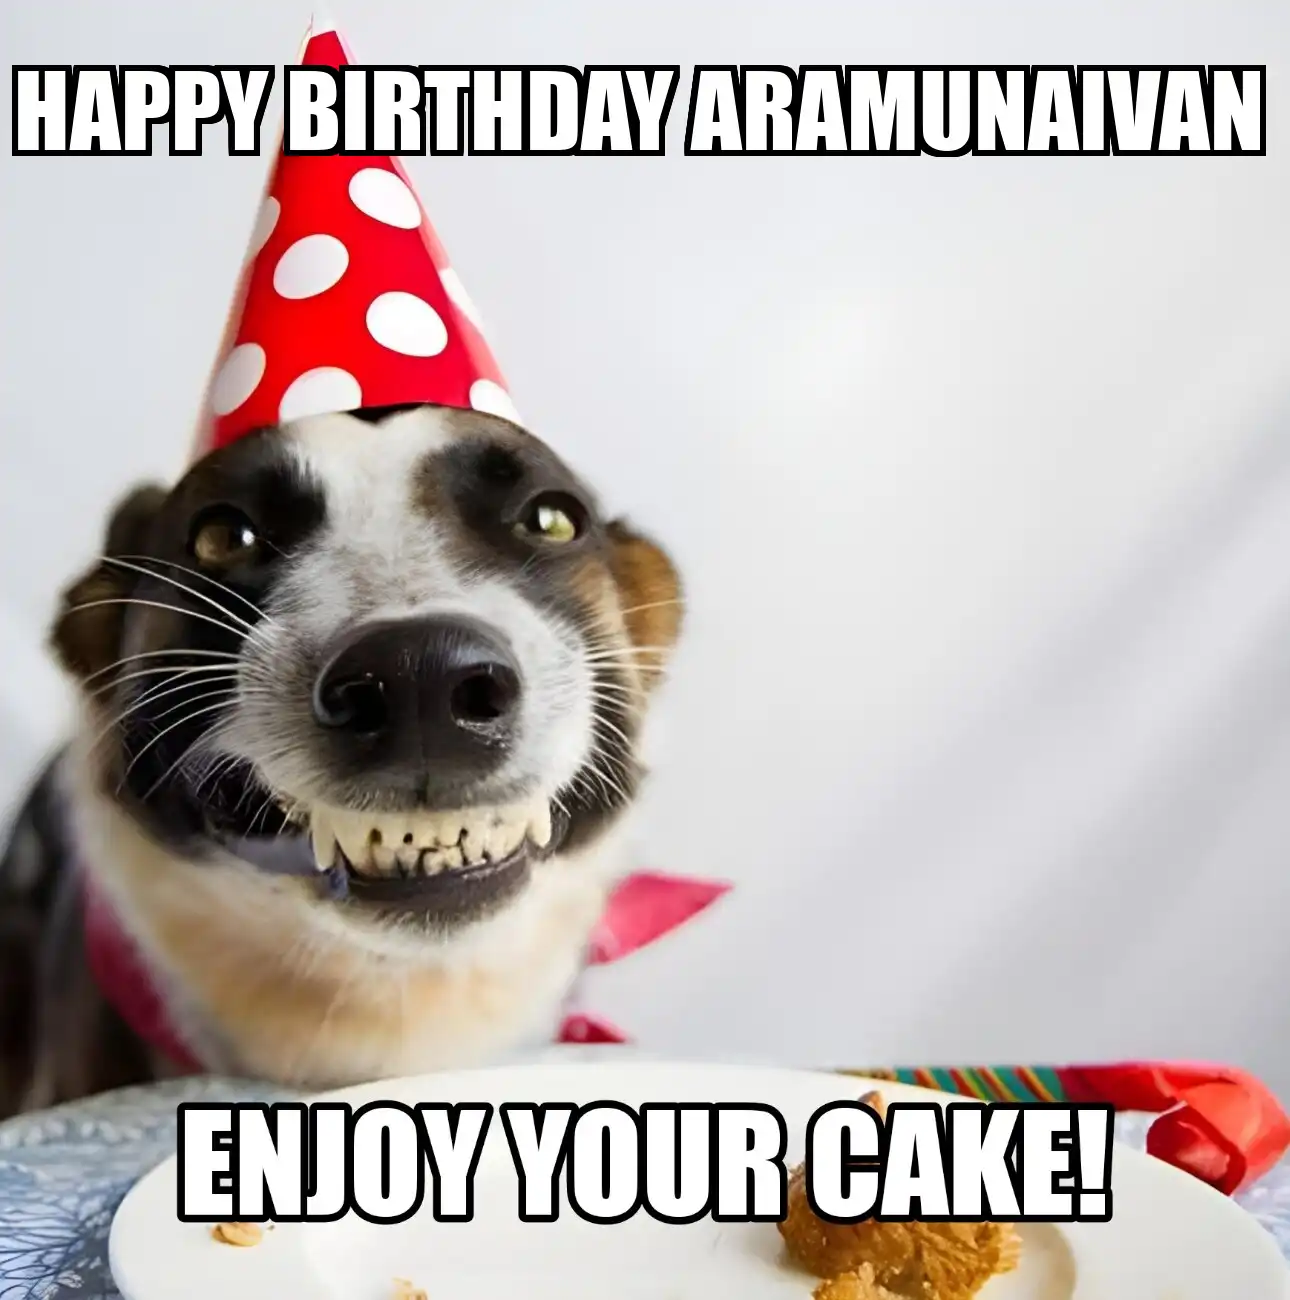 Happy Birthday Aramunaivan Enjoy Your Cake Dog Meme